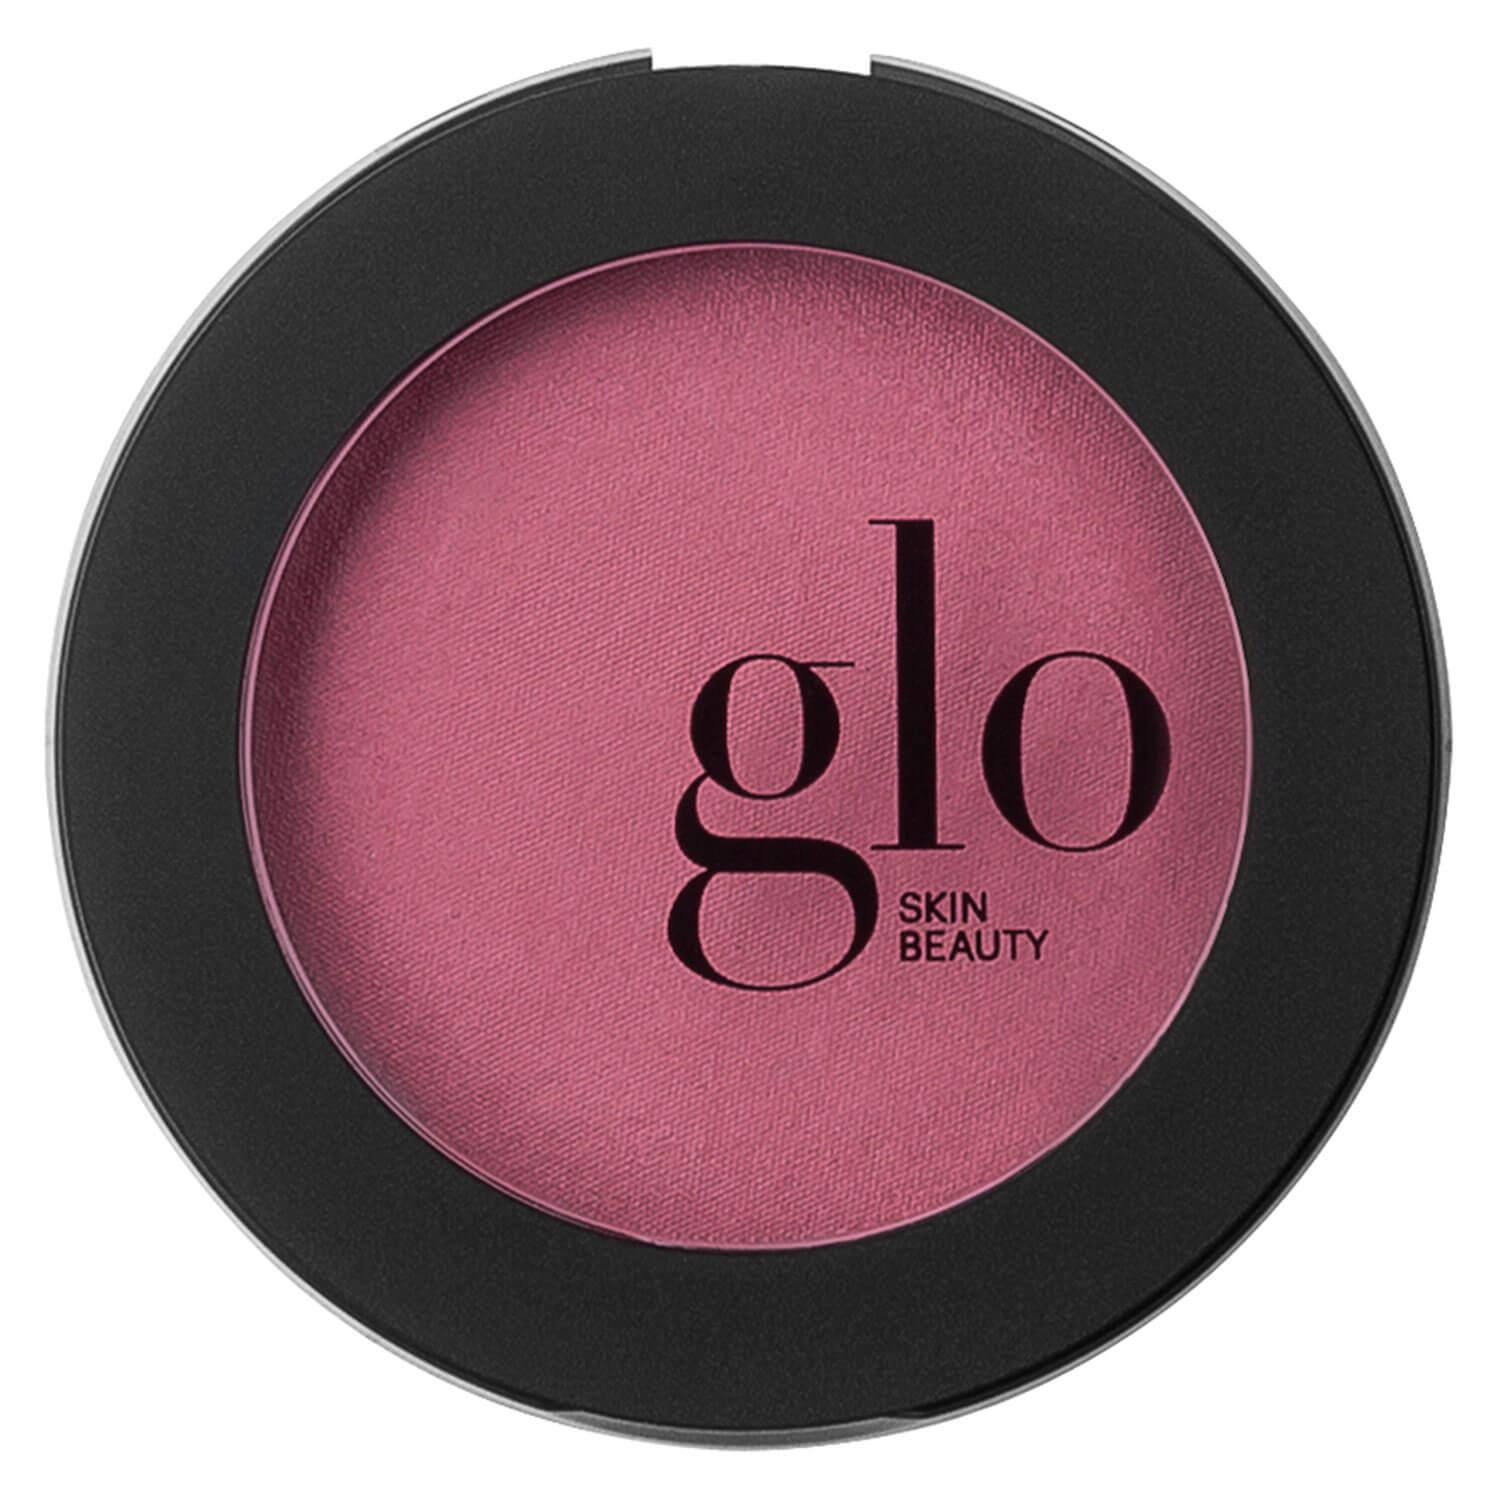 Glo Skin Beauty Blush - Blush Passion